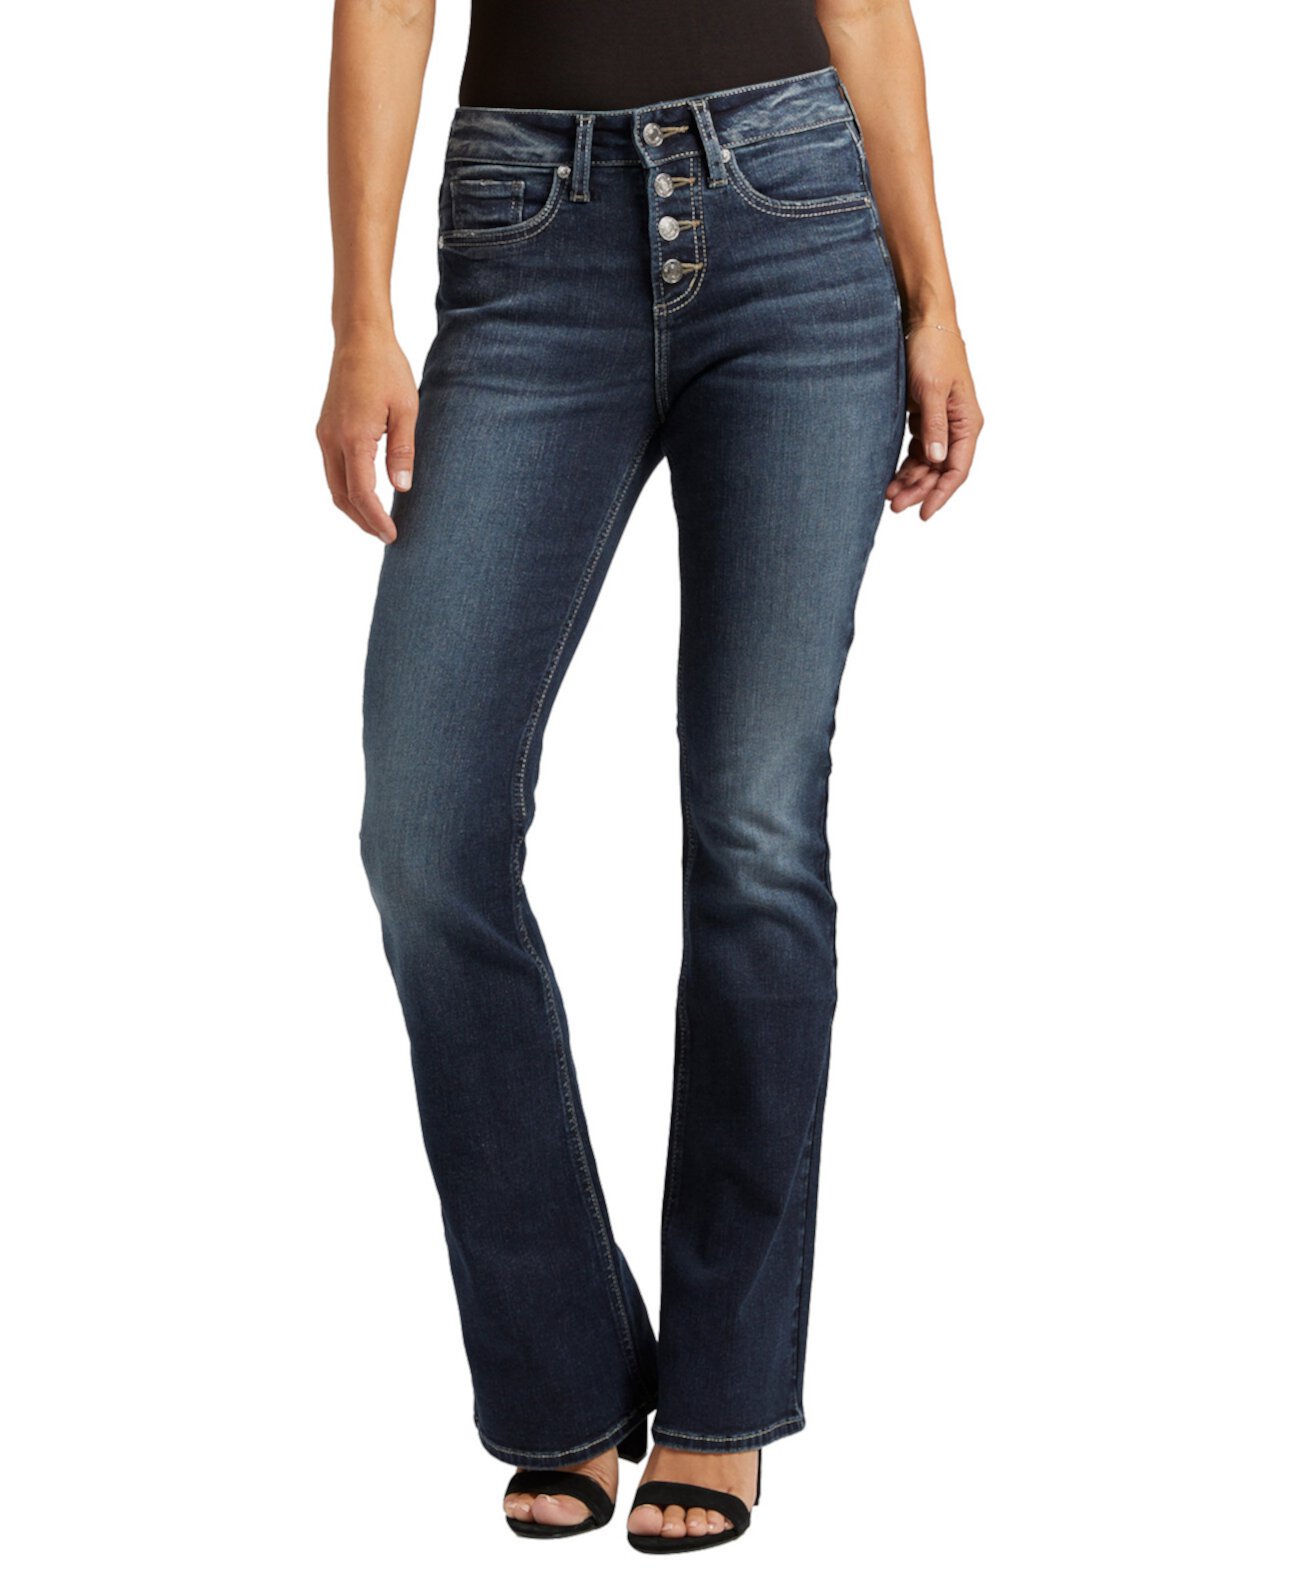 Женские джинсы Suki Bootcut со средней посадкой Silver Jeans Co.